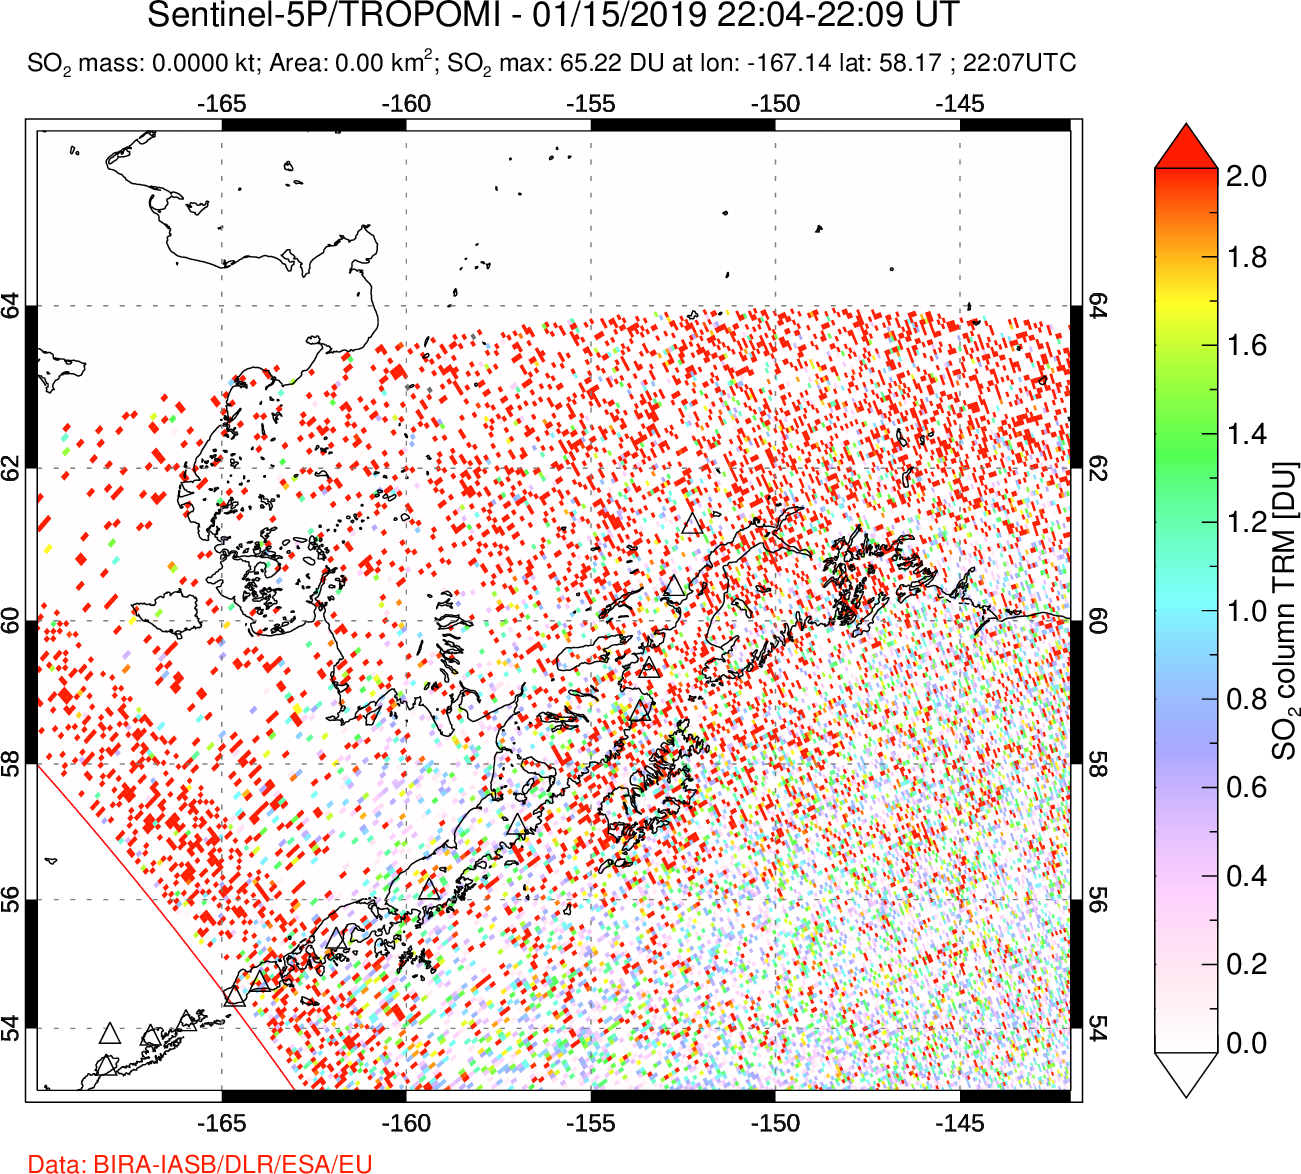 A sulfur dioxide image over Alaska, USA on Jan 15, 2019.